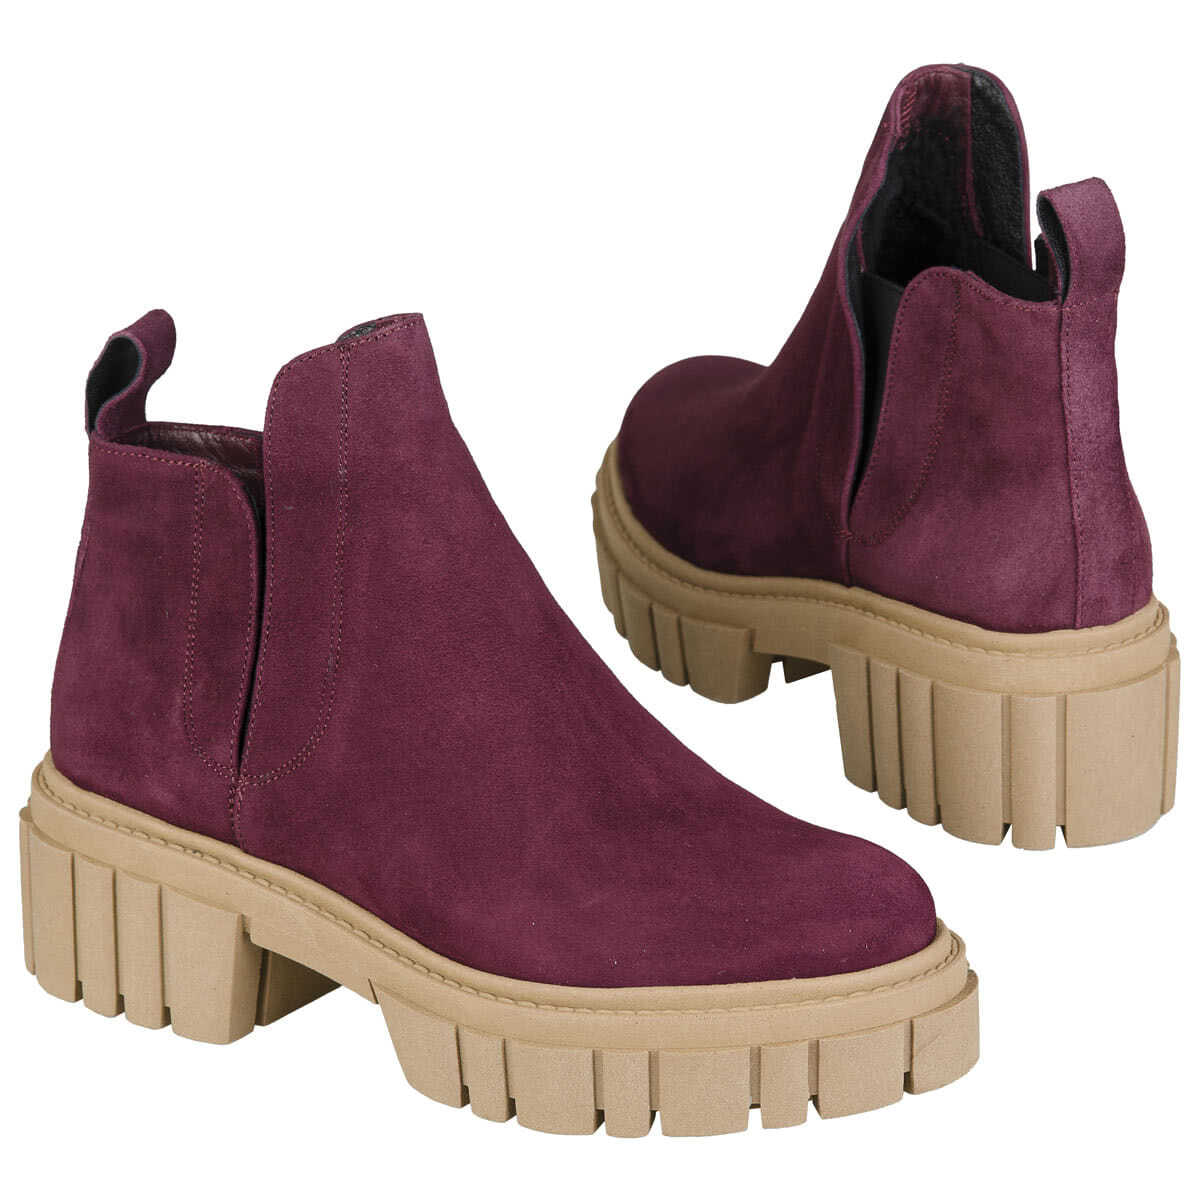 Замшевые женские зимние ботинки фиолетового цвета на шерсти с толстойподошвой 6 см купить в интернет магазине Kwinto